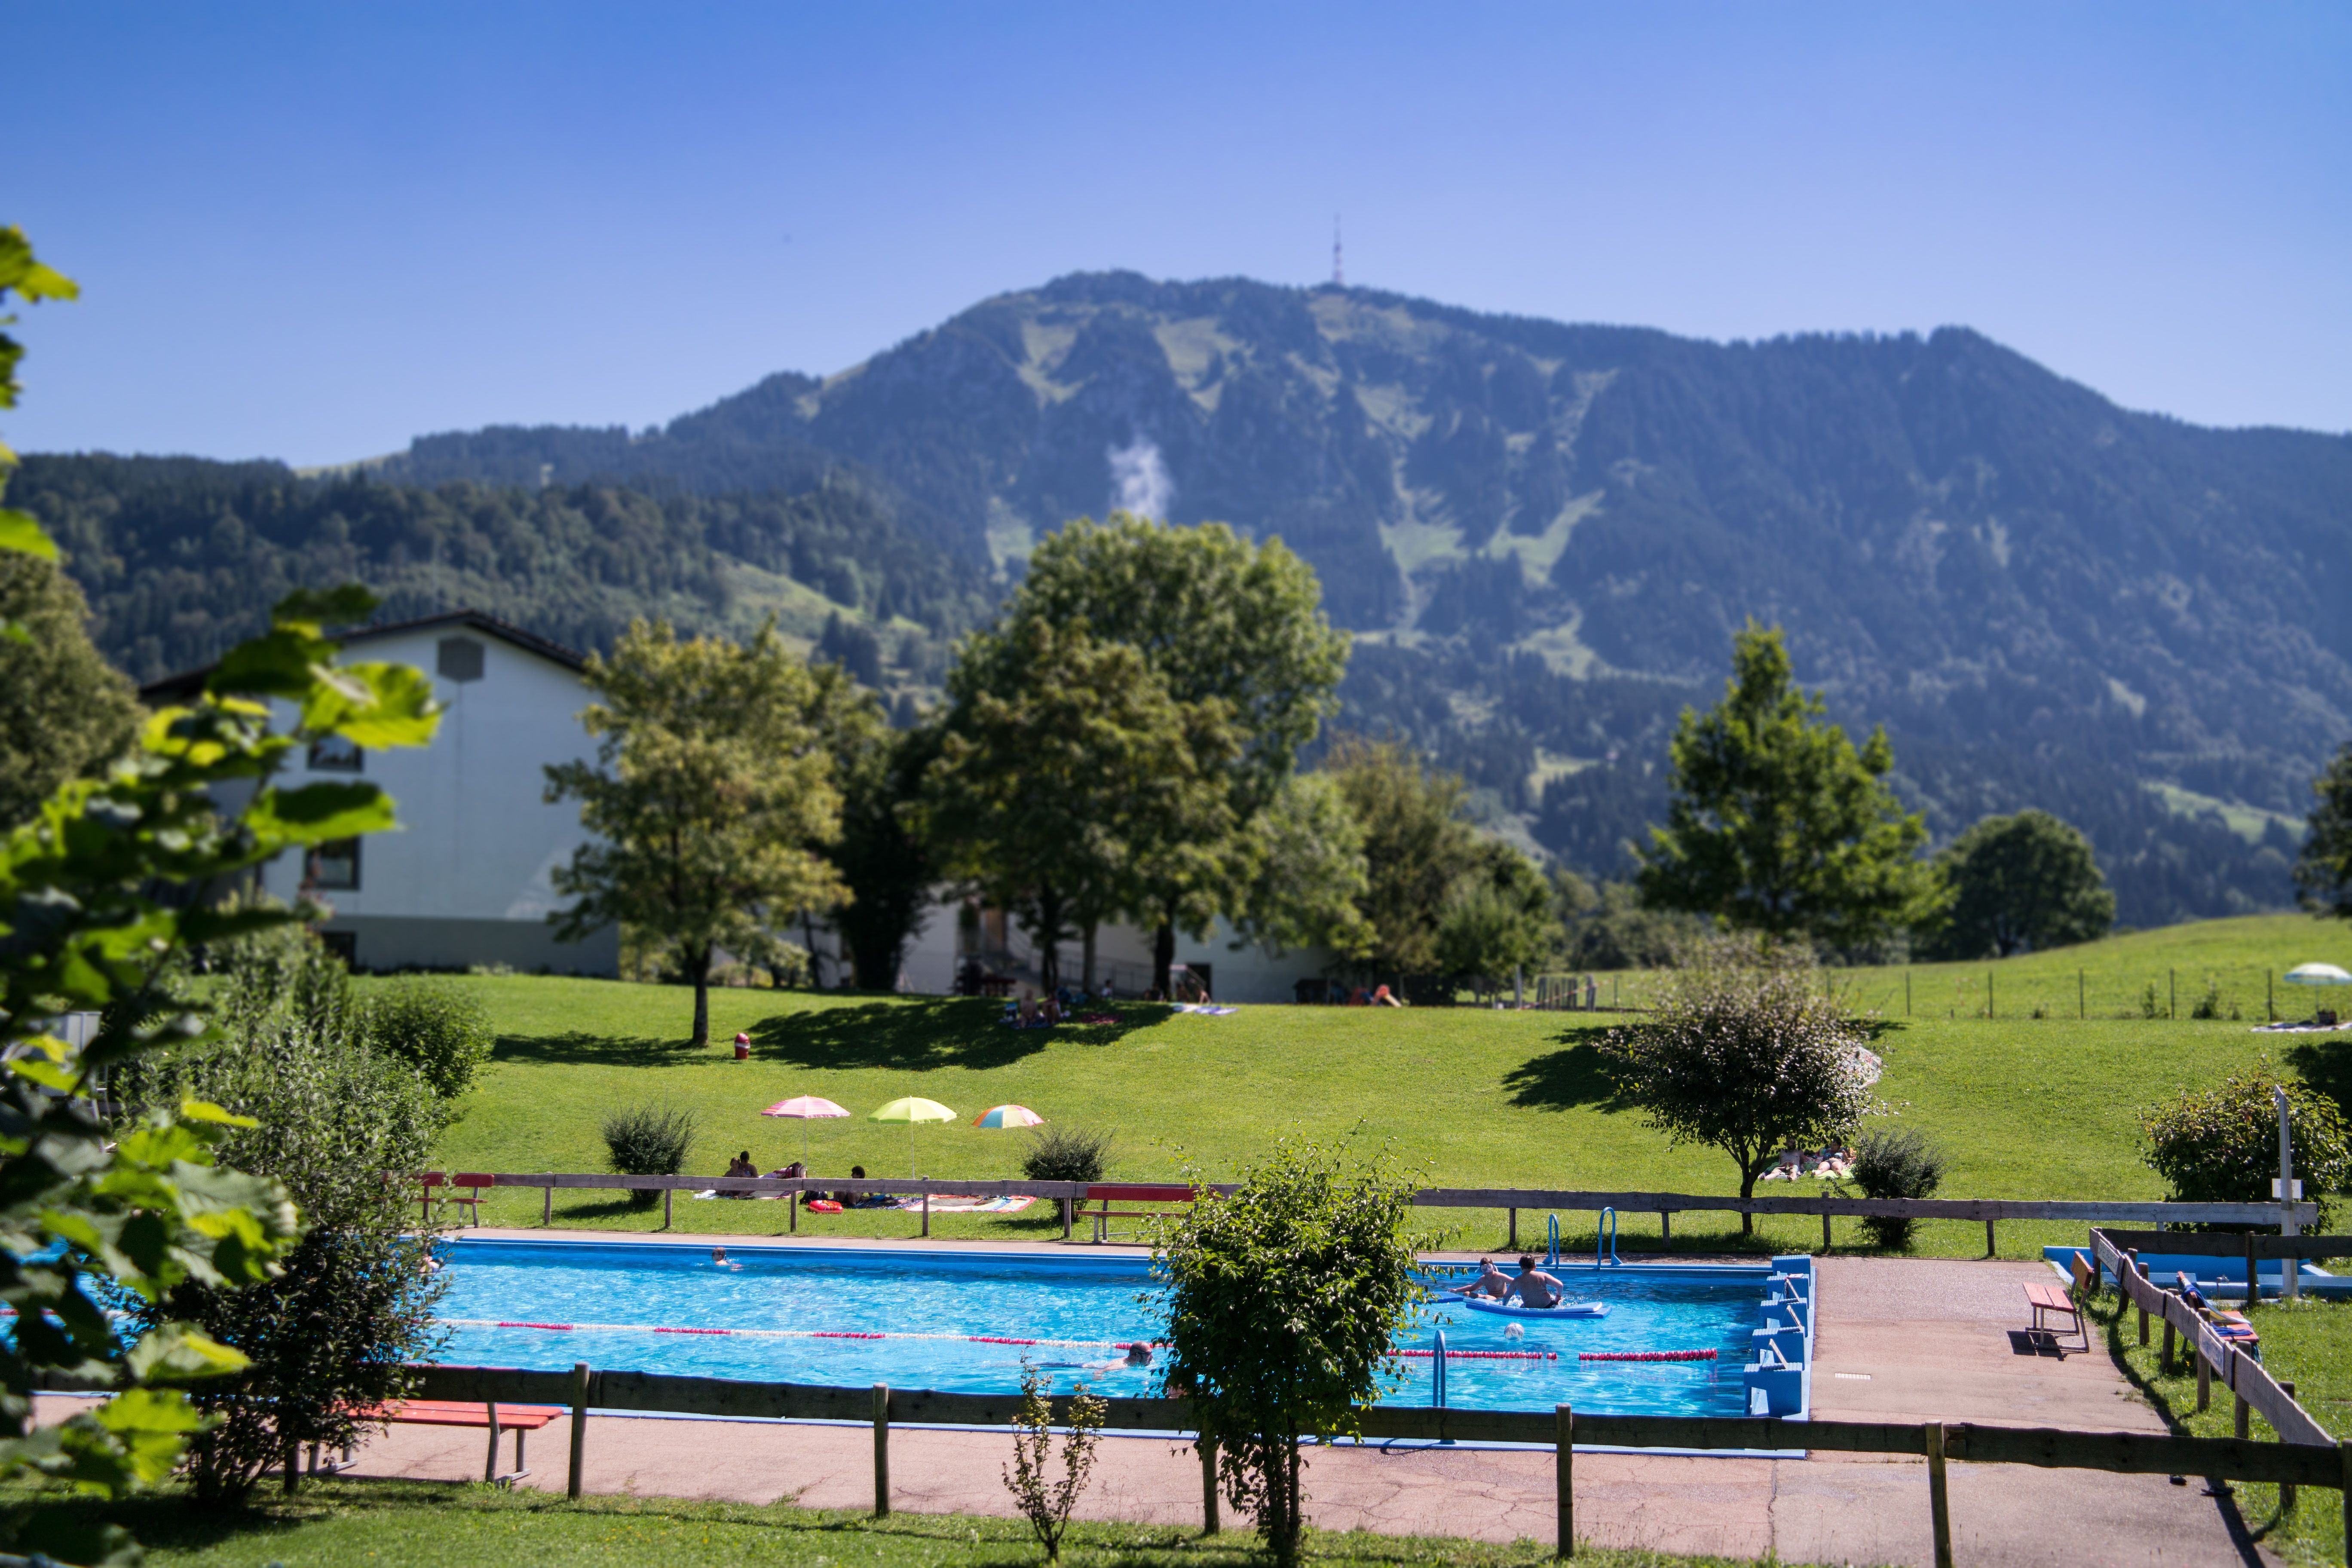 Vor dem Grünten liegt das Freibad Rettenberg. Das Bad verfügt über ein einfache Schwimmer- & Nichtschwimmerbecken, das praktische Babyplanschbecken, einen Beach-Volleyballplatz und die gute alte Tischtennisplatte.